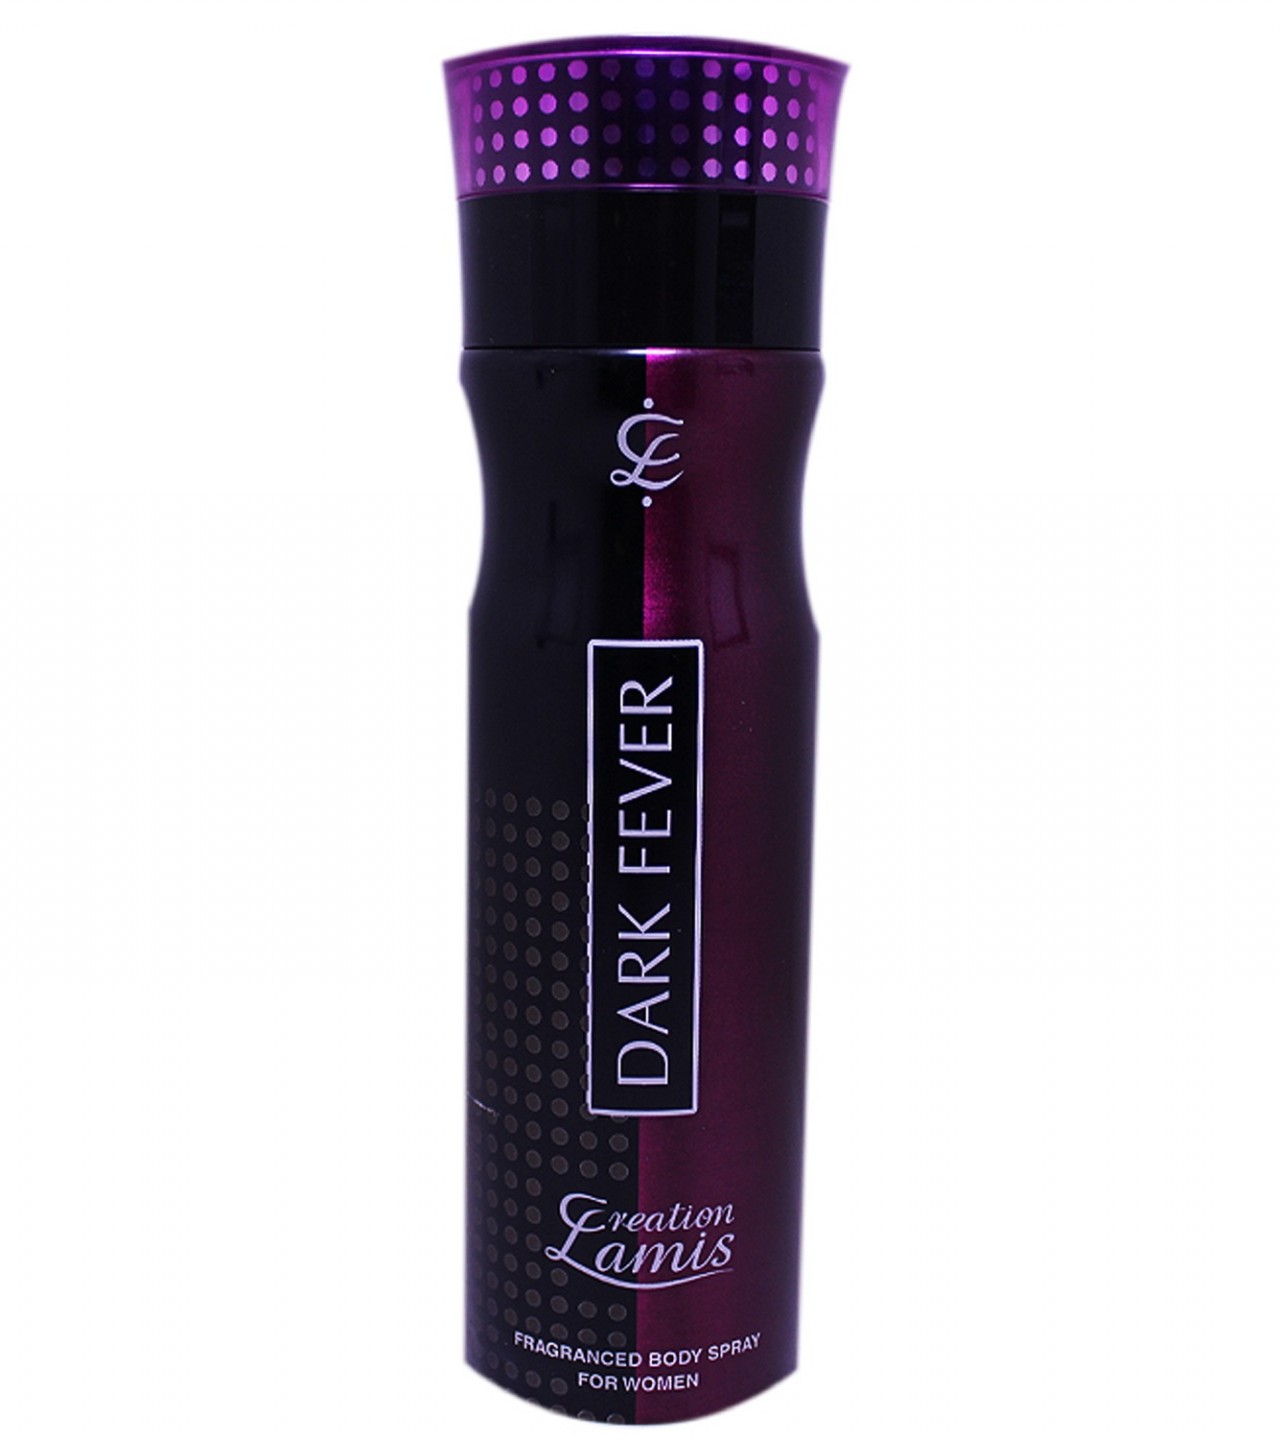 Creation Lamis Dark Fever Body Spray For Women - 200 ml